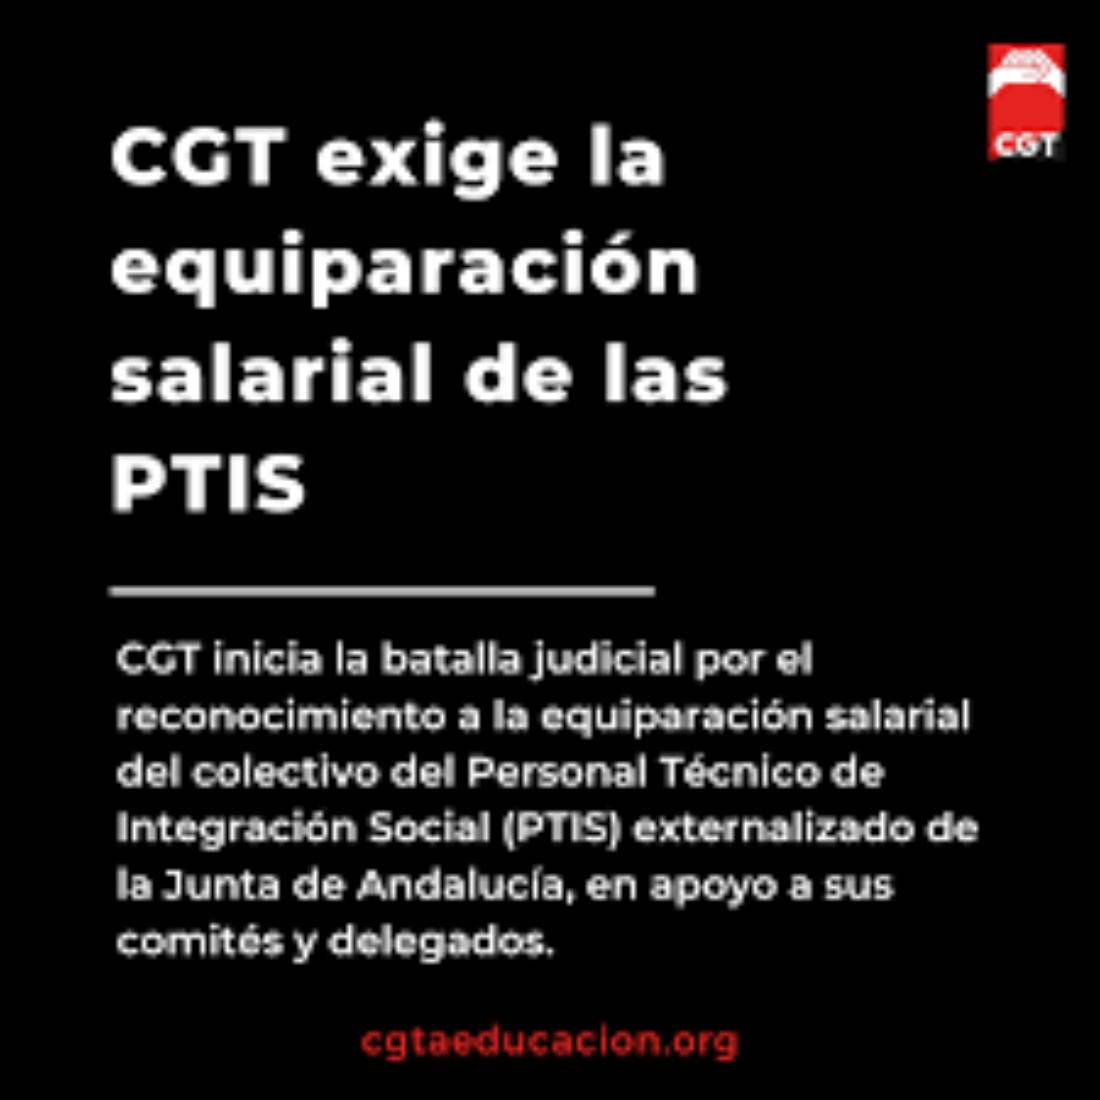 CGT exige la equiparación salarial de las PTIS